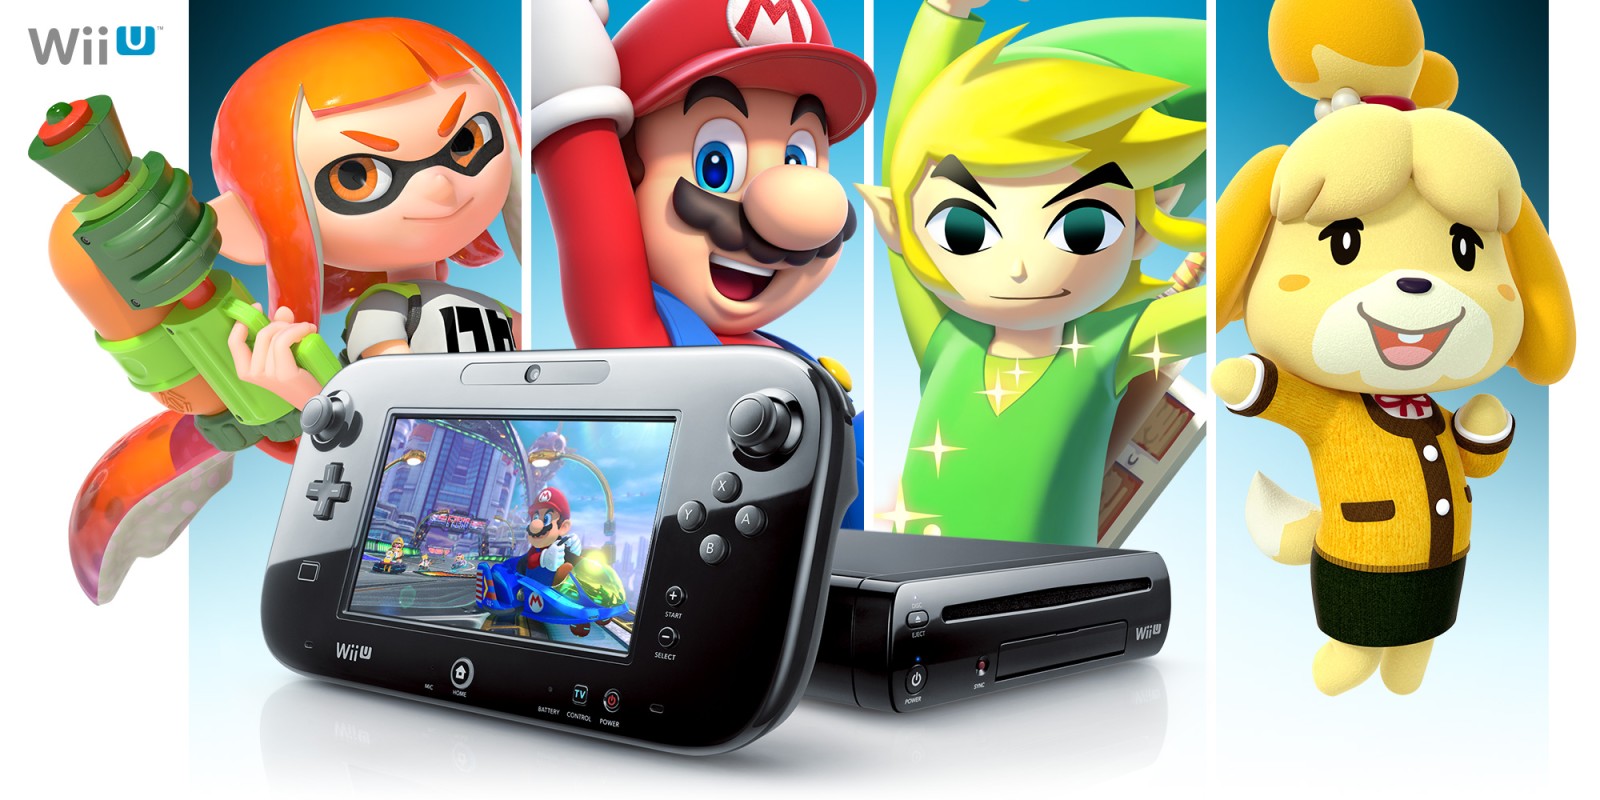 Diga adeus ao Wii U: plataforma recebe último jogo em dezembro